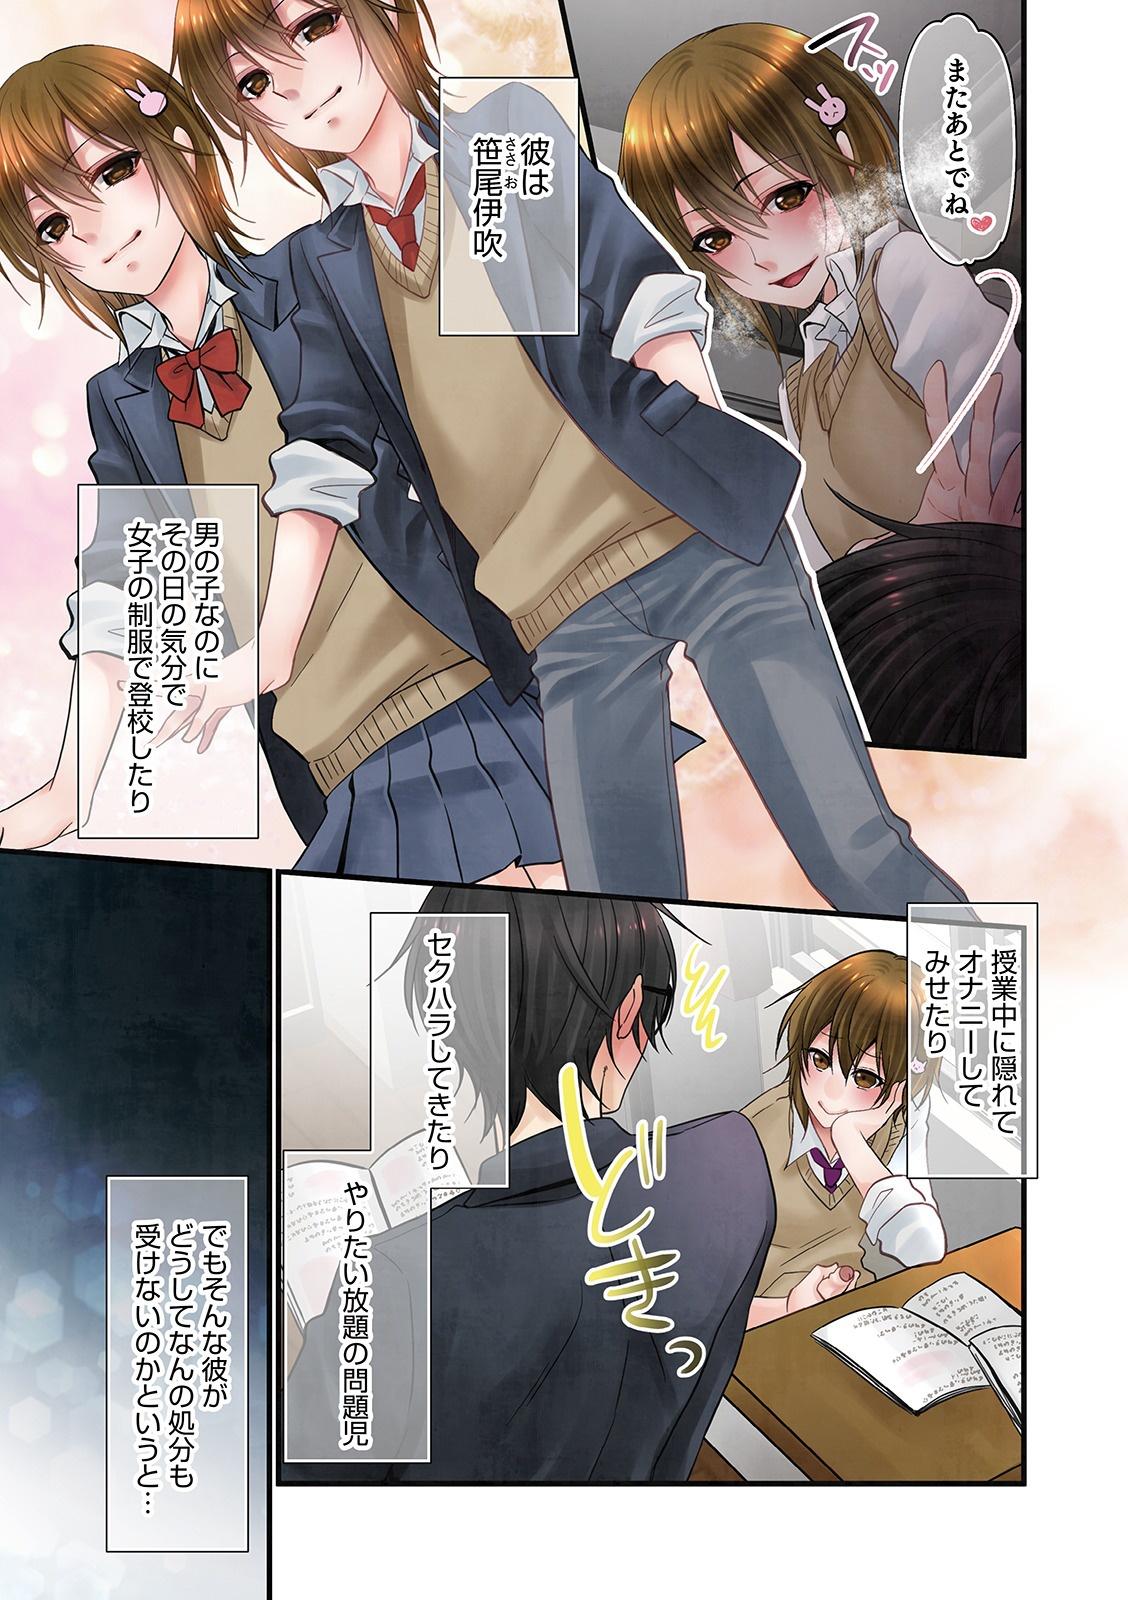 Cute Otokonoko Heaven's Door 13 Students - Page 5